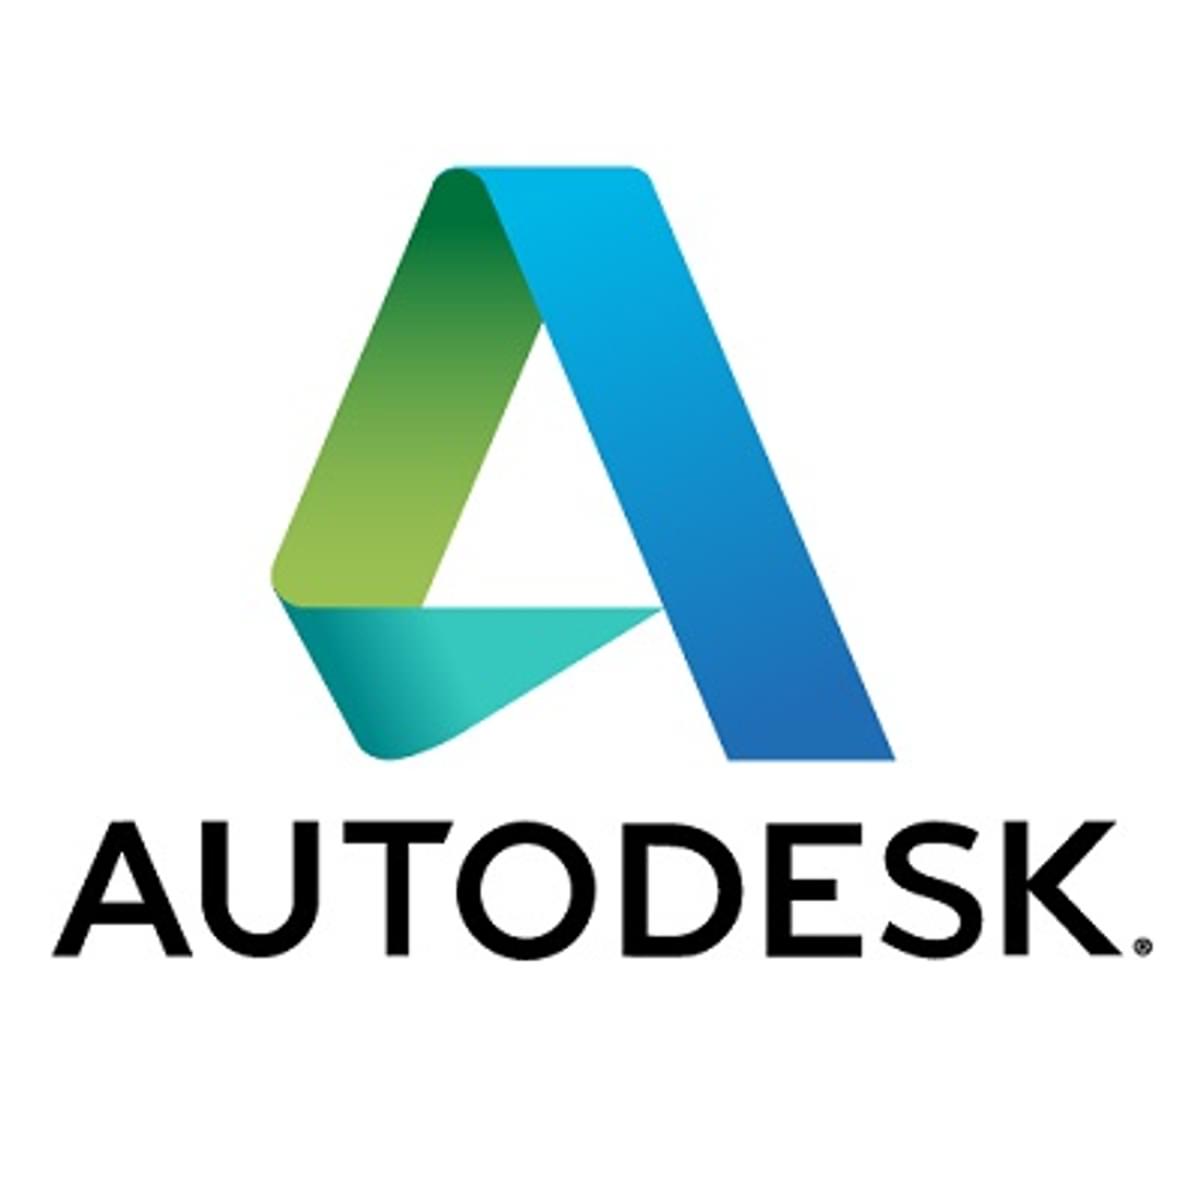 CAD & Company neemt Autodesk-portefeuille over van Stabiplan image